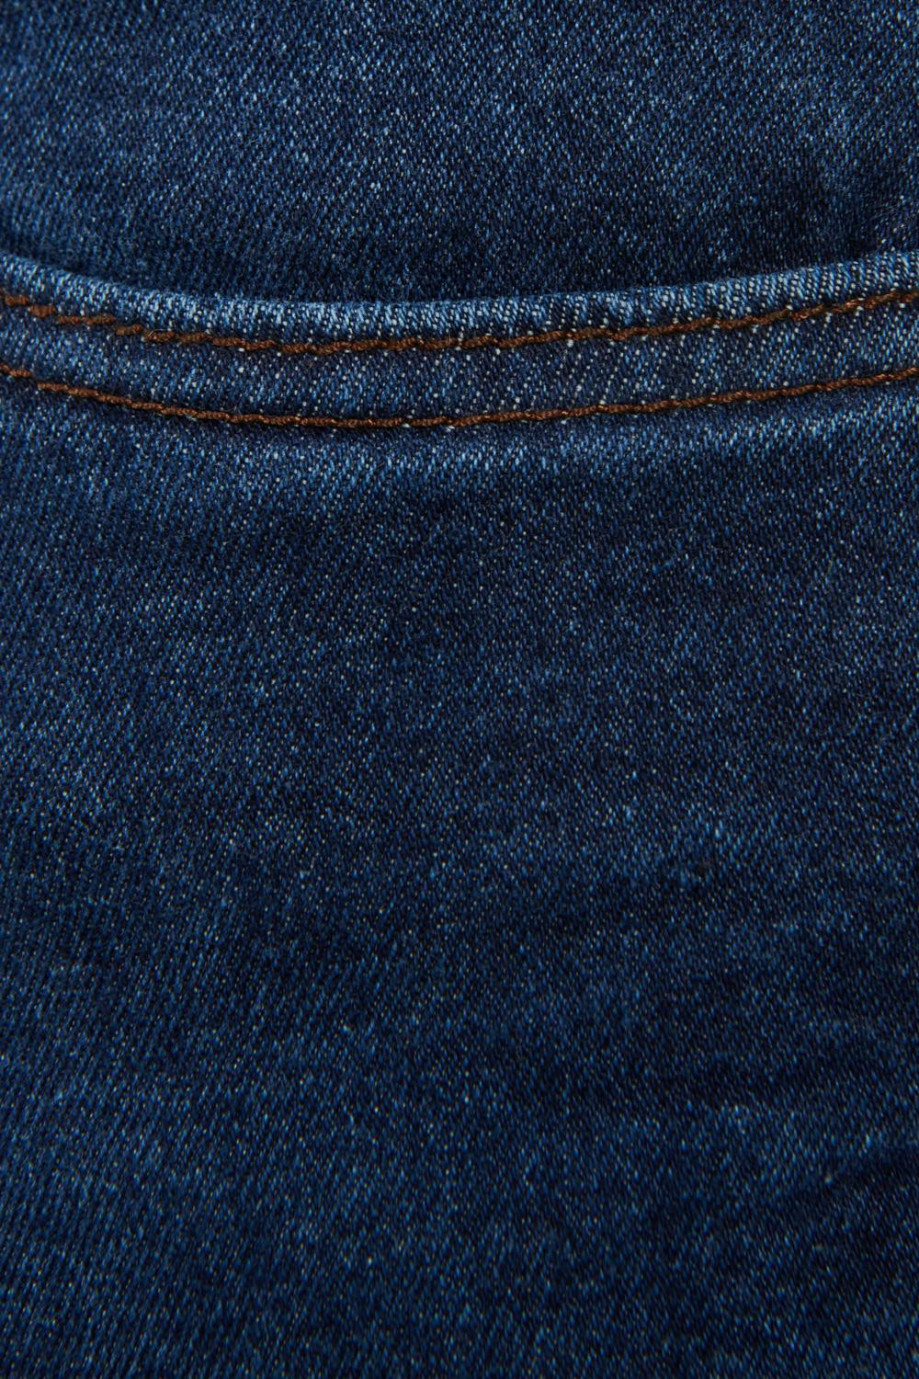 Jean azul intenso tipo slim 5 bolsillos con tiro bajo